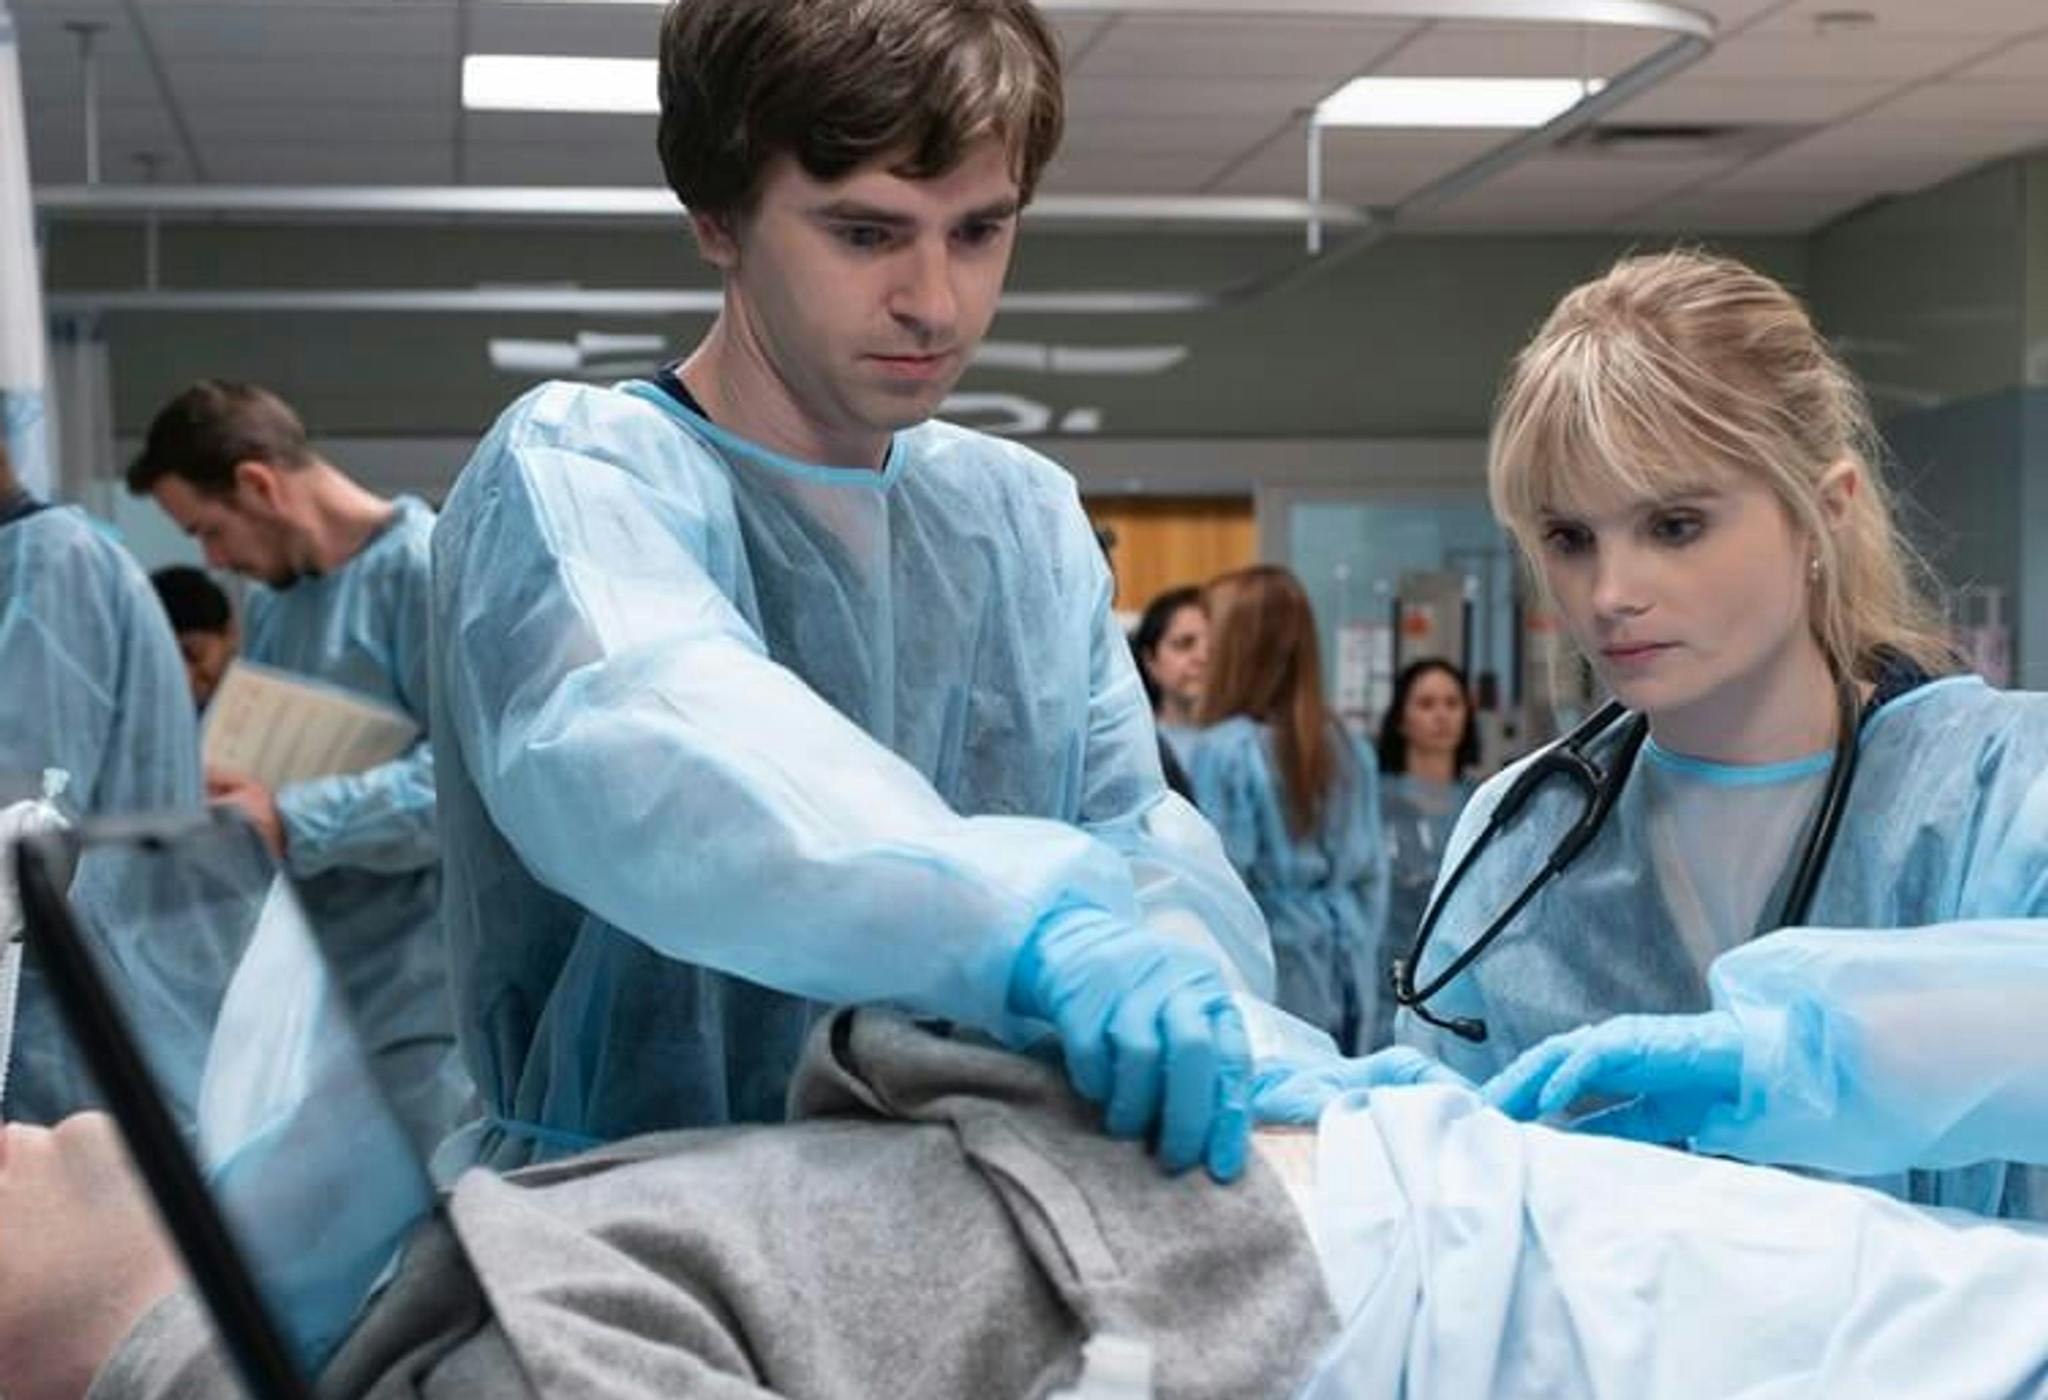 Fotograma de la séptima temporada de la serie 'The good doctor', con Richard Schiff y Paige Spara en la imagen